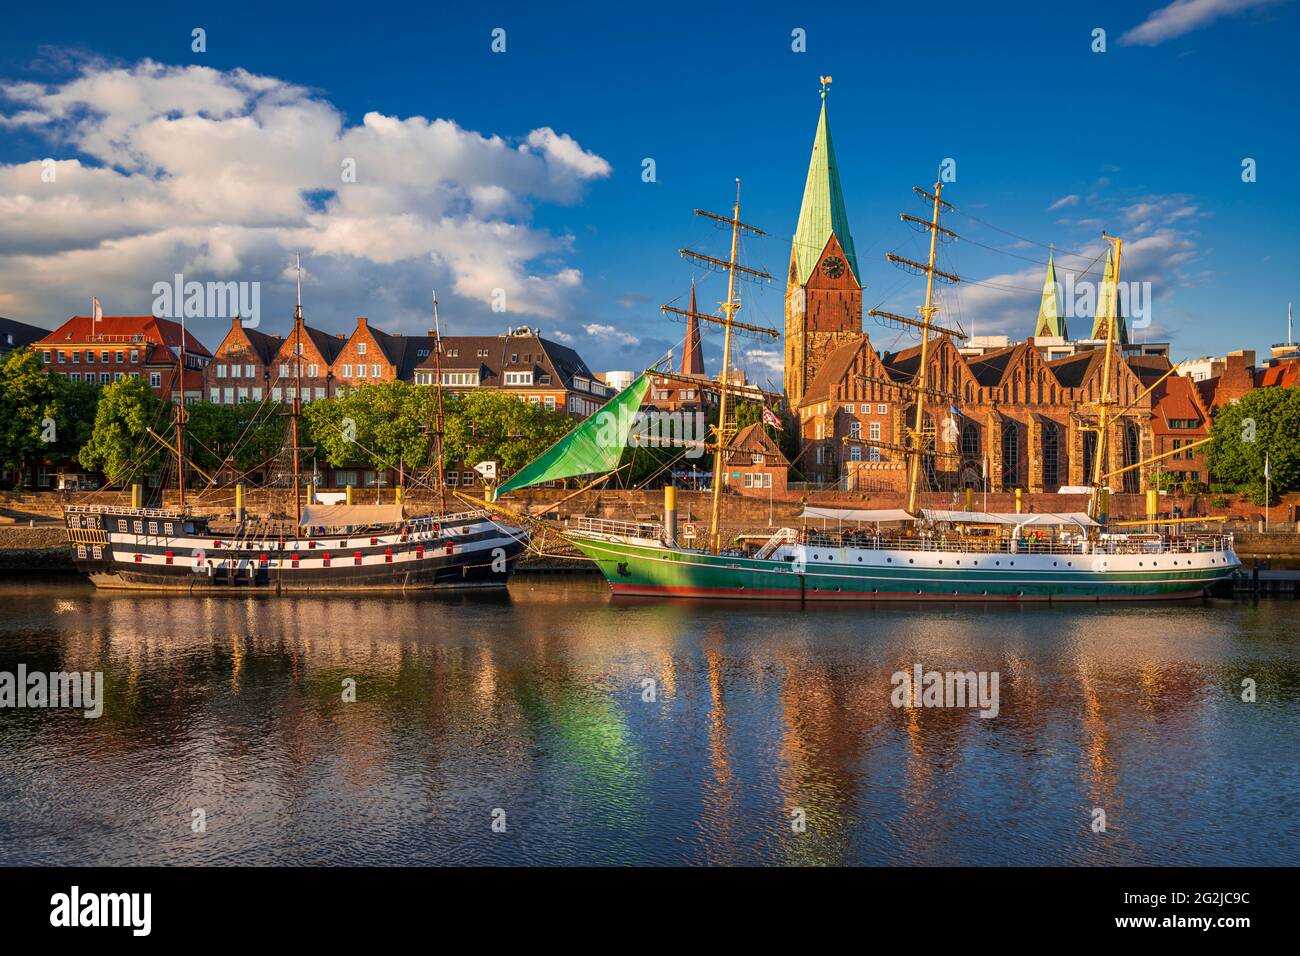 Historische Stadt Bremen mit alten Segelschiffen an der Weser Stockfoto